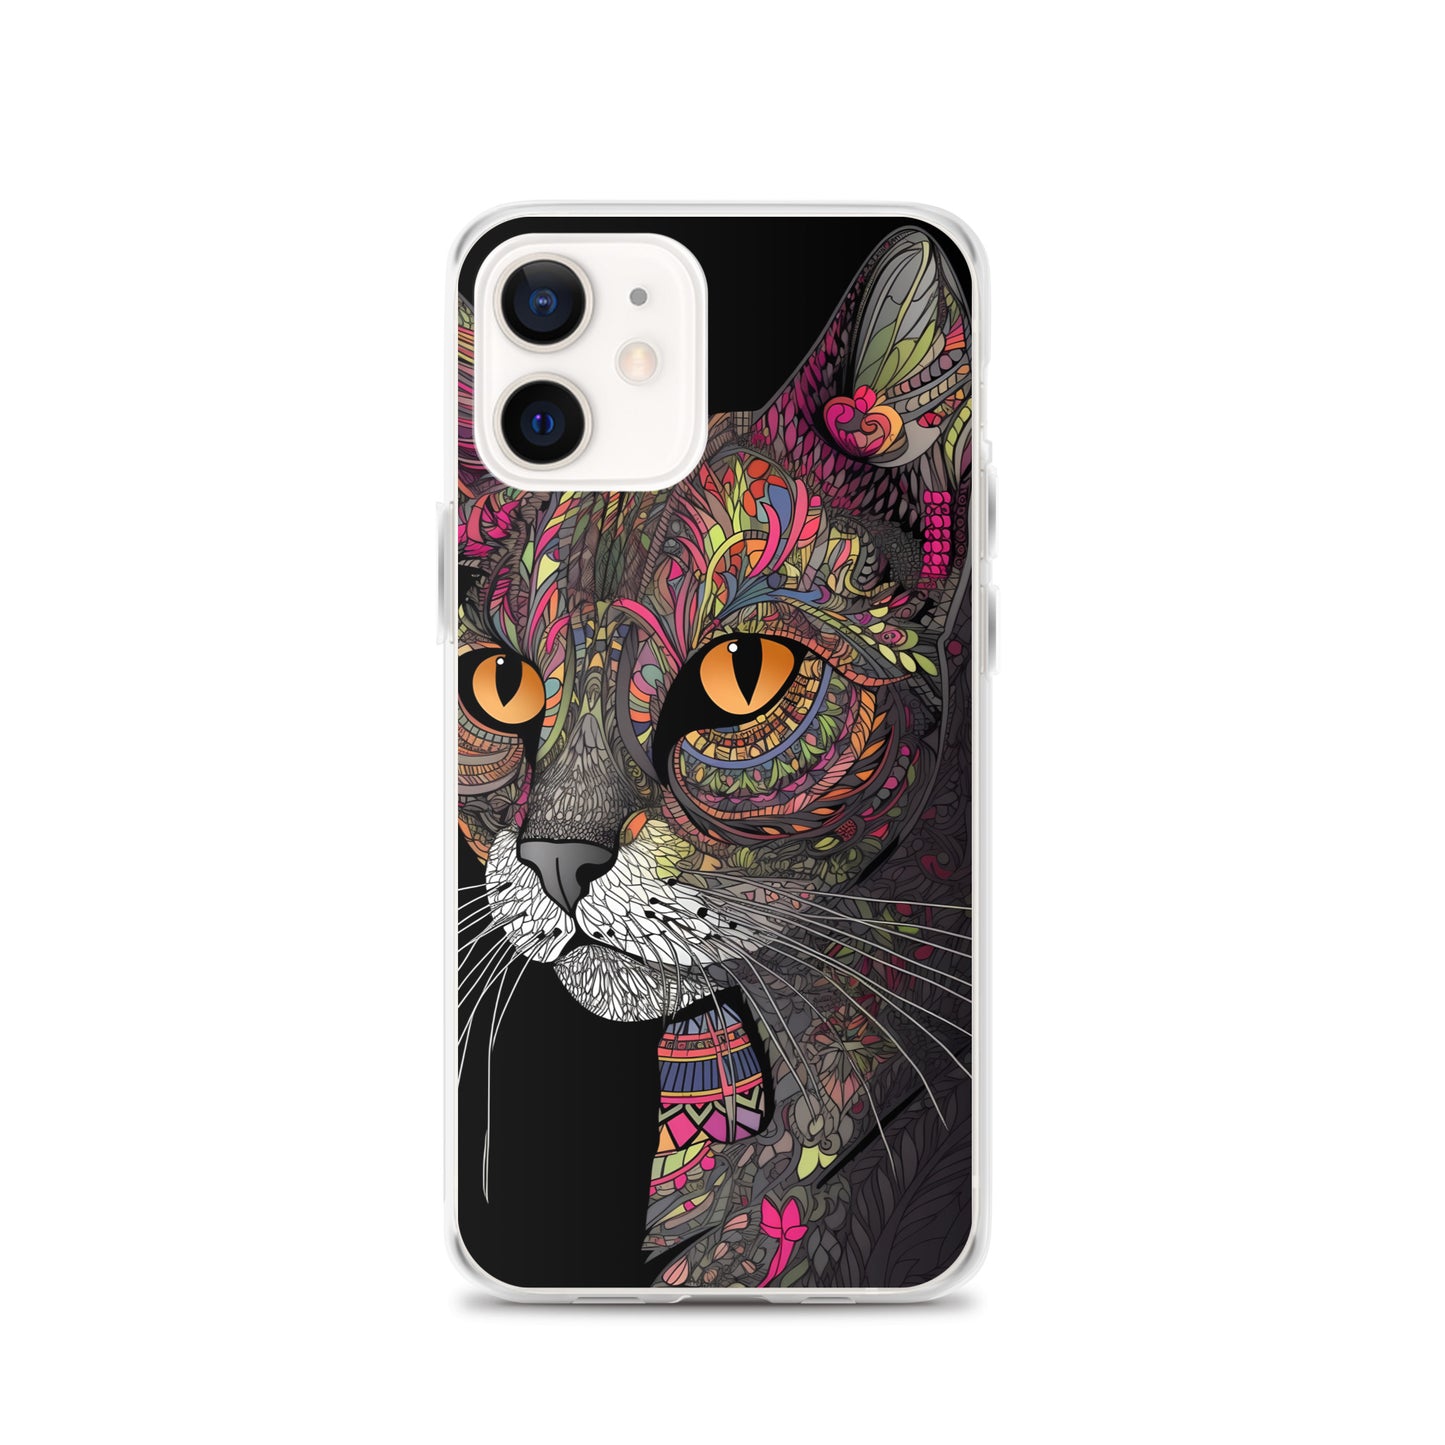 iPhone Case - Dark Pop Kitty